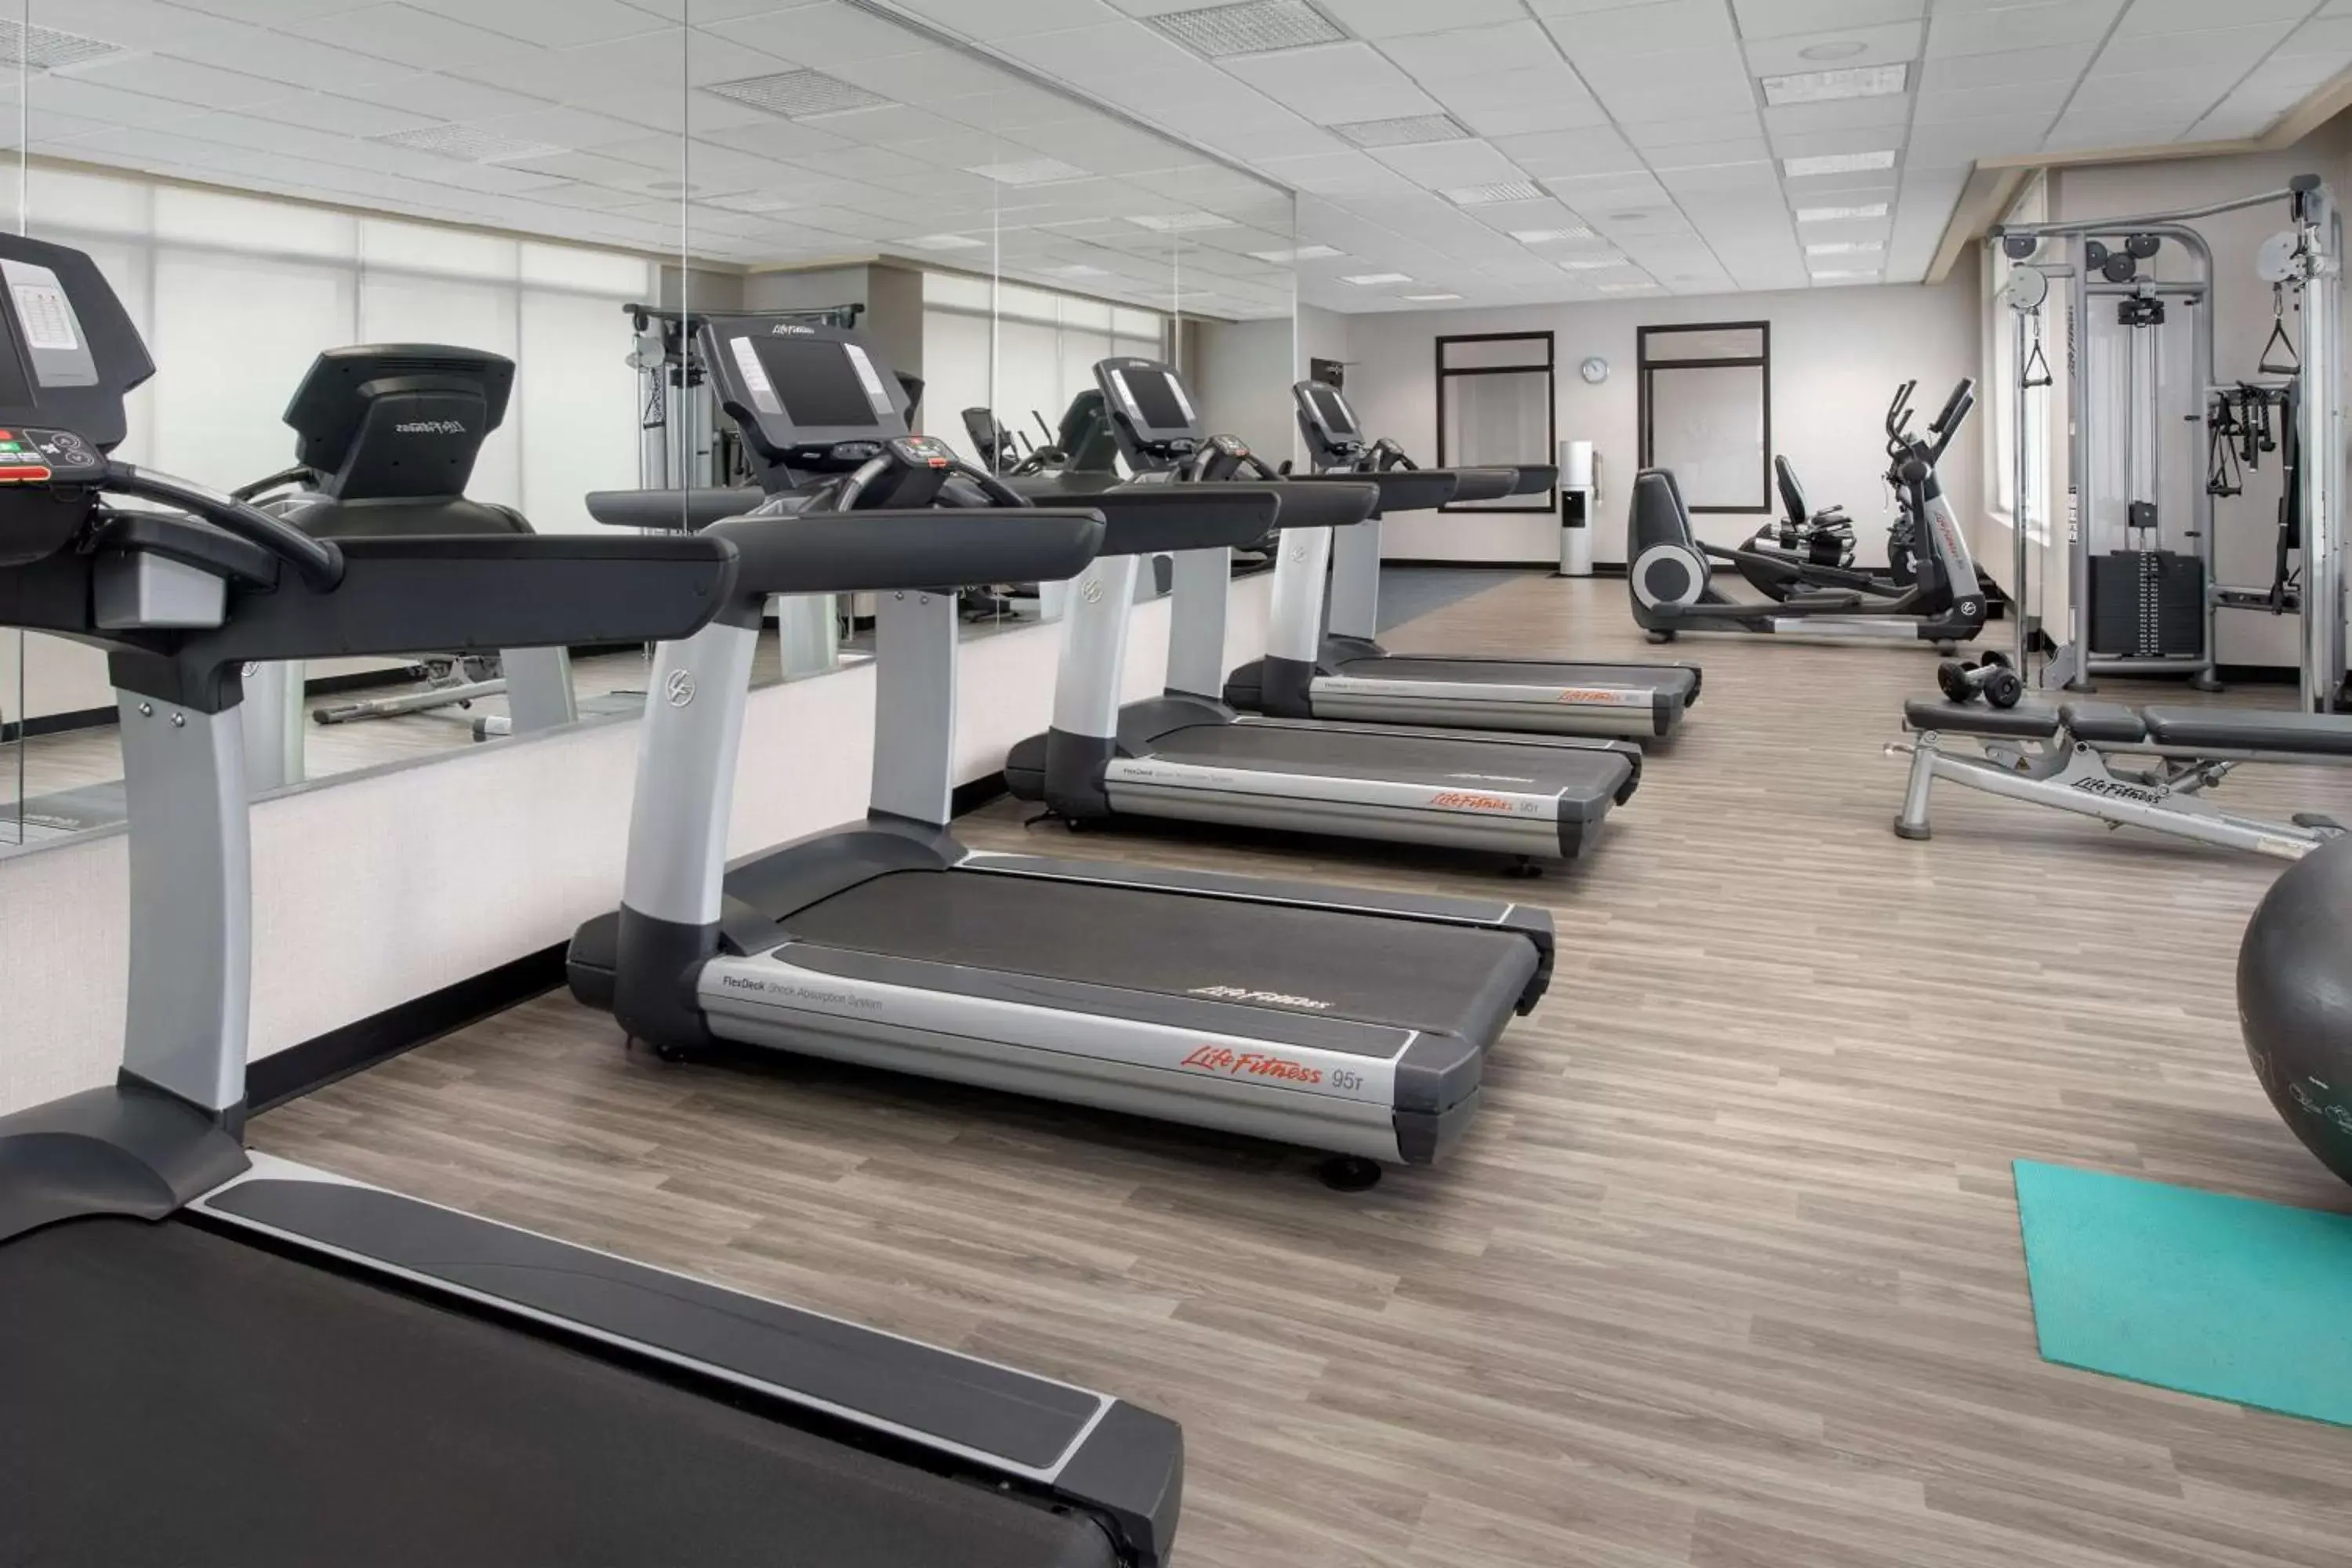 Fitness centre/facilities, Fitness Center/Facilities in Hyatt Place Sugar Land